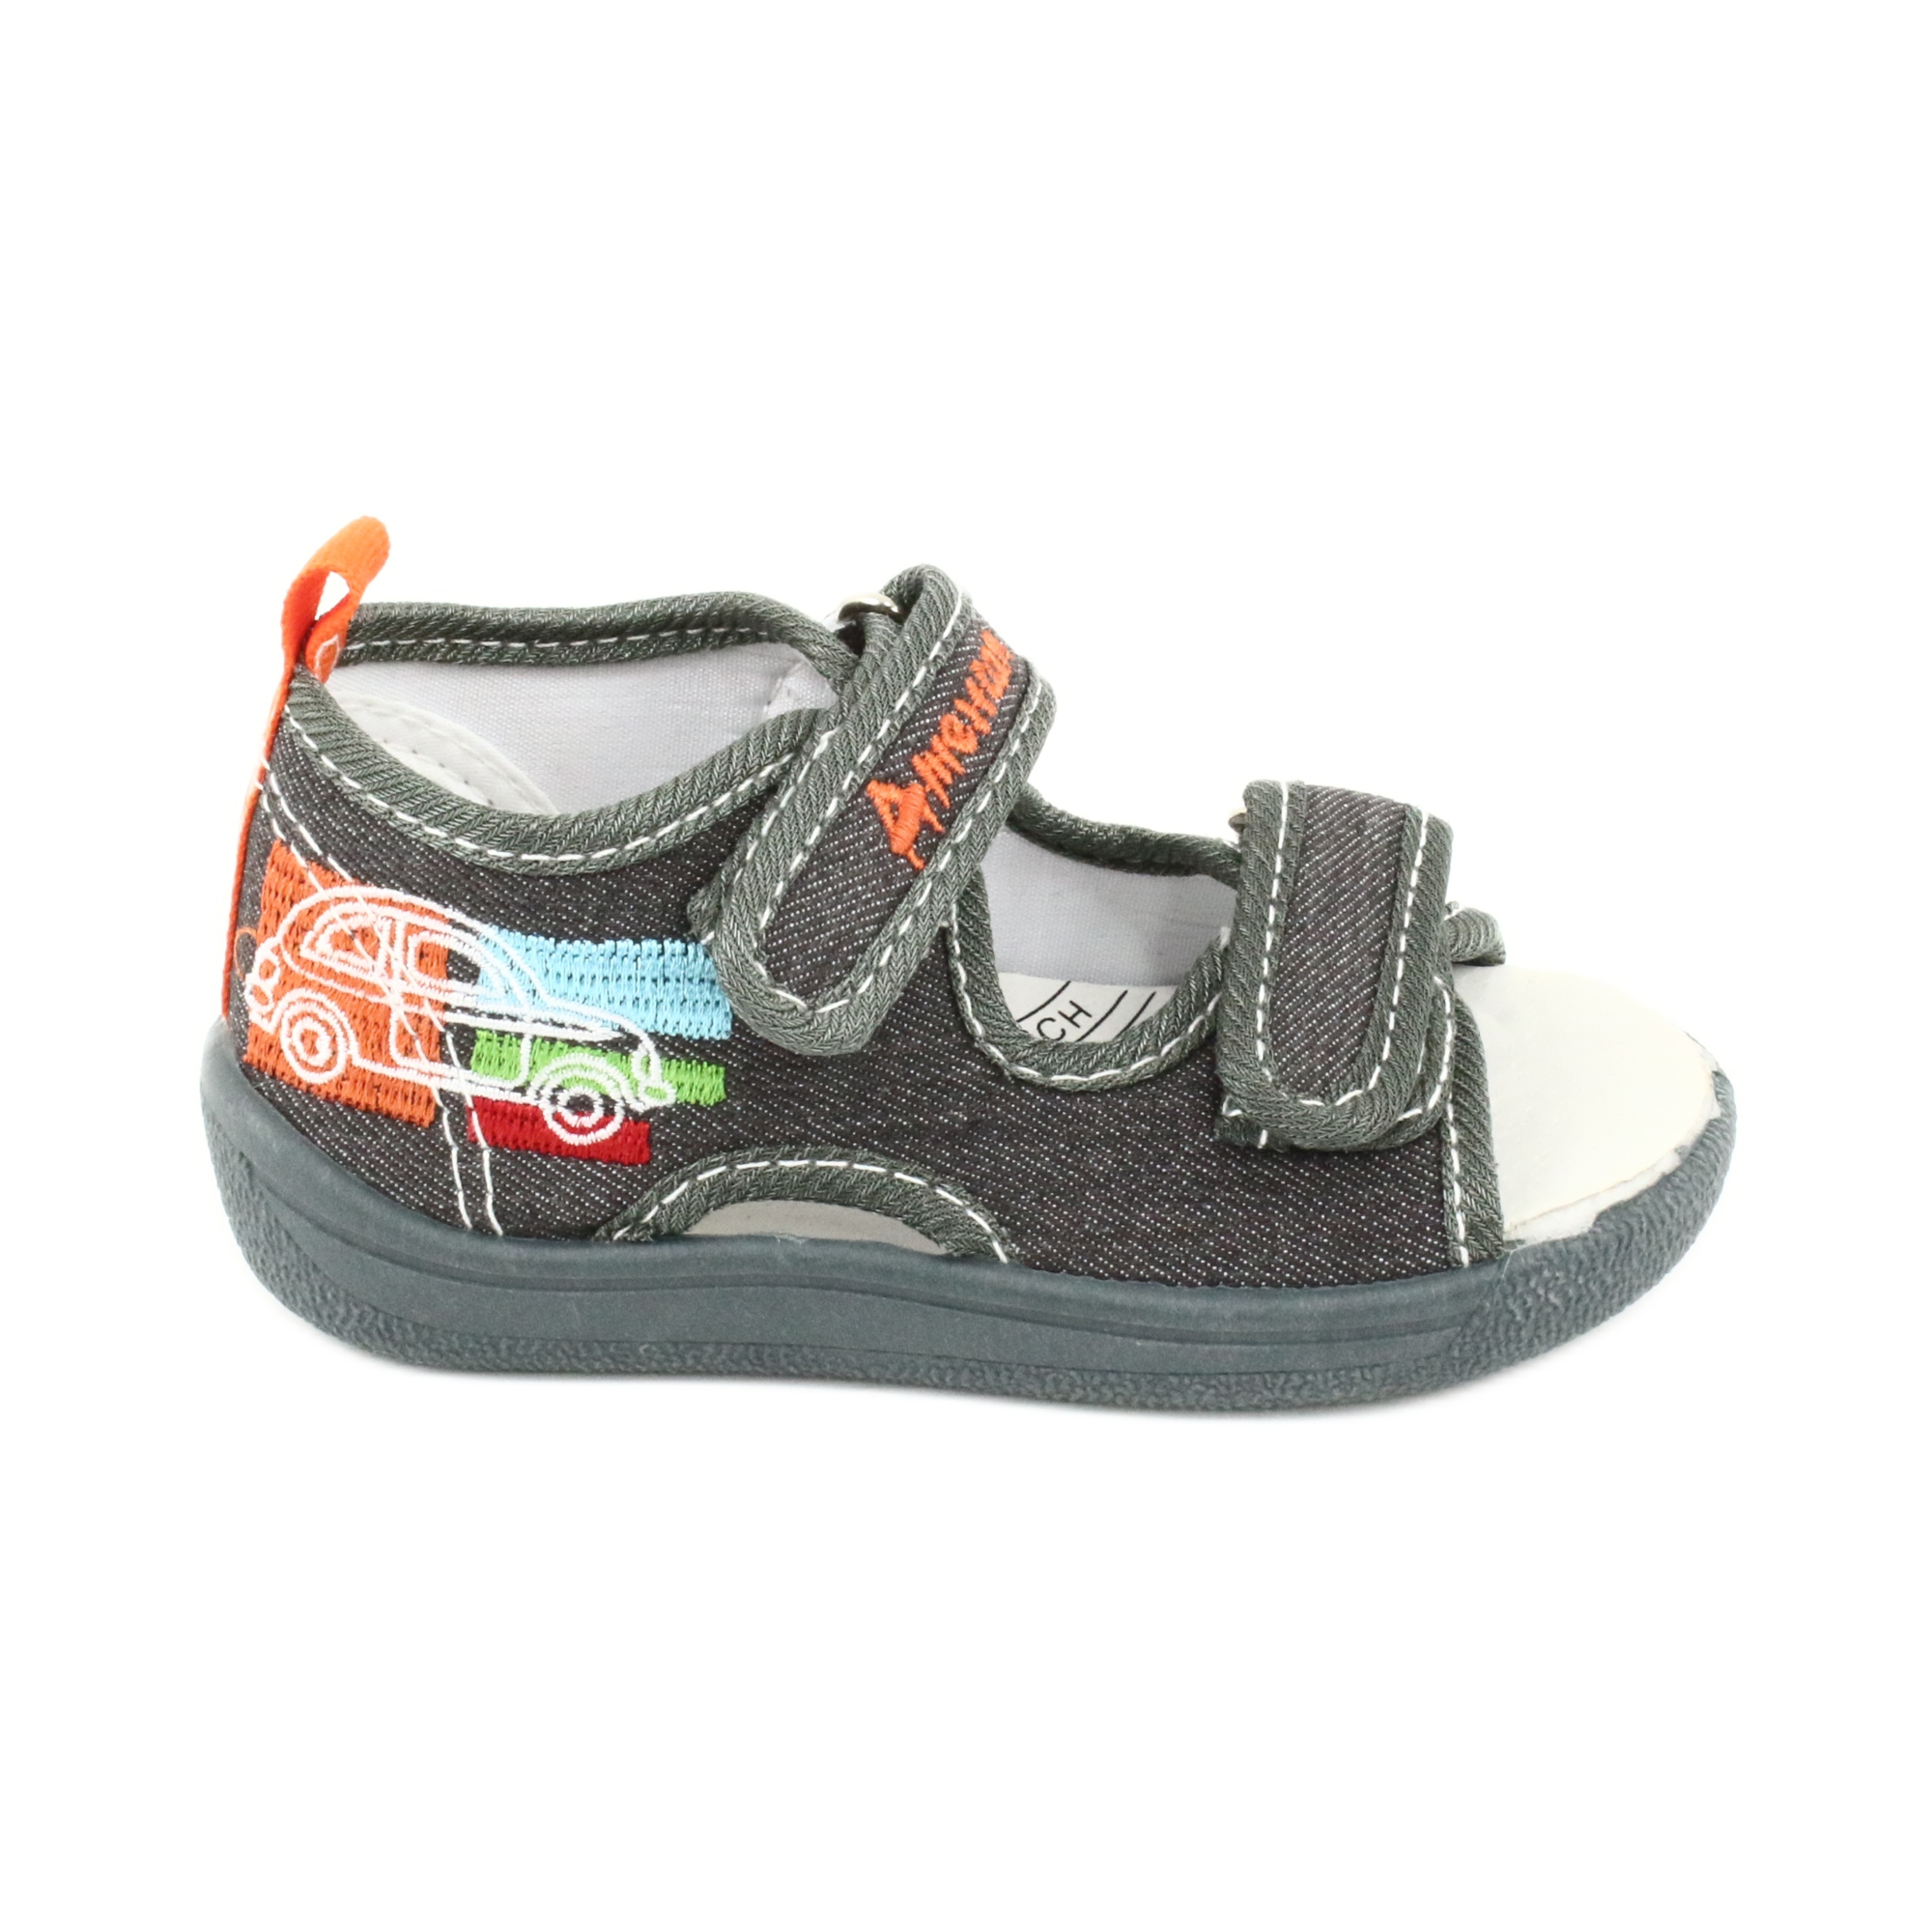 American Club American sandałki buty dziecięce wkładka skórzana TEN46 pomarańczowe szare